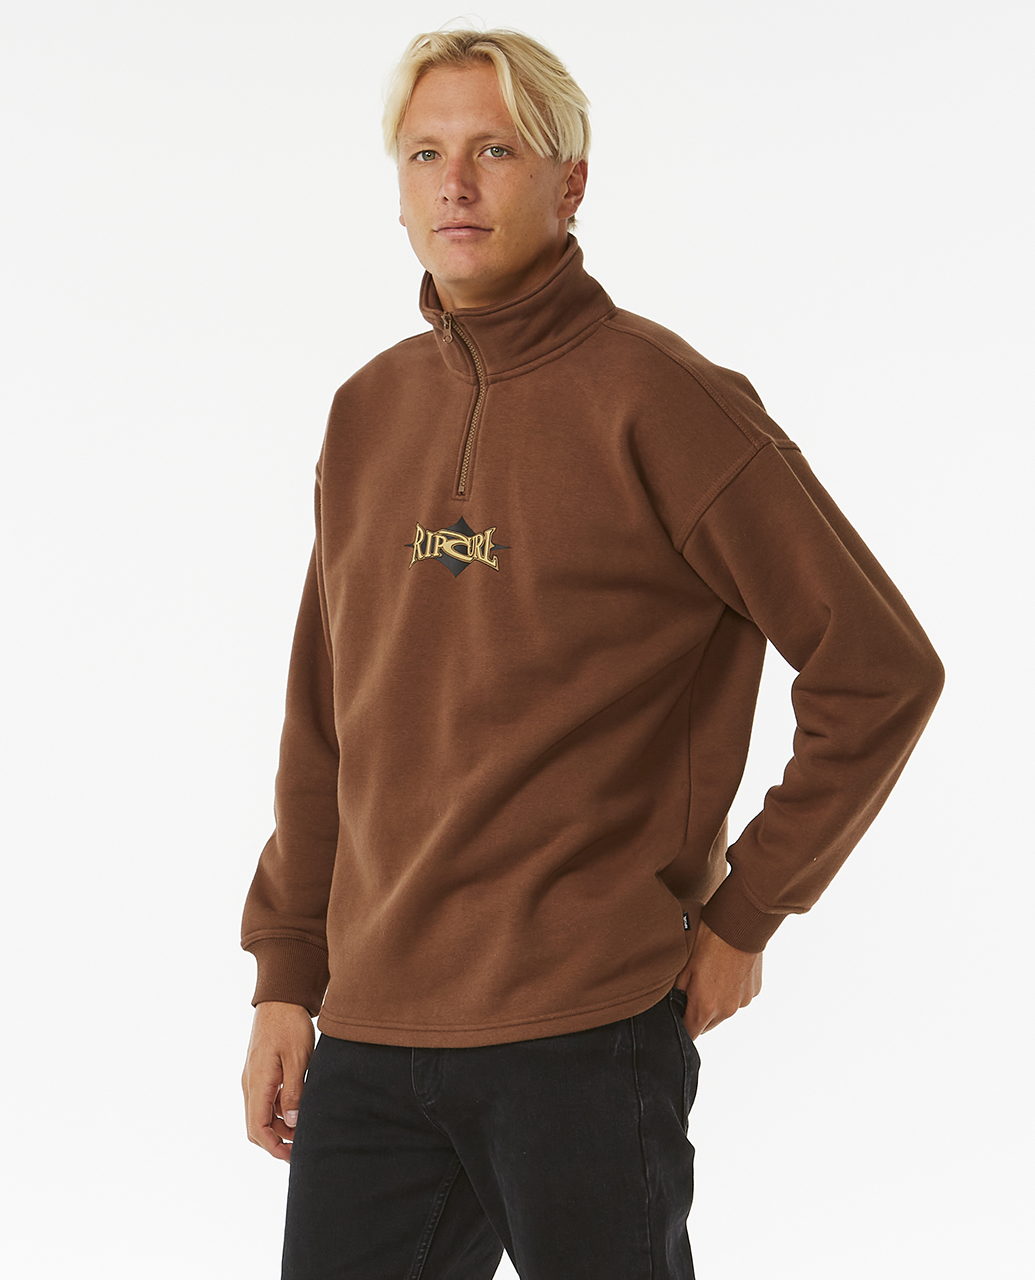 Men's Hoodies | Surf Sweatshirts & Jumpers | Surf Clothing | Ozmosis